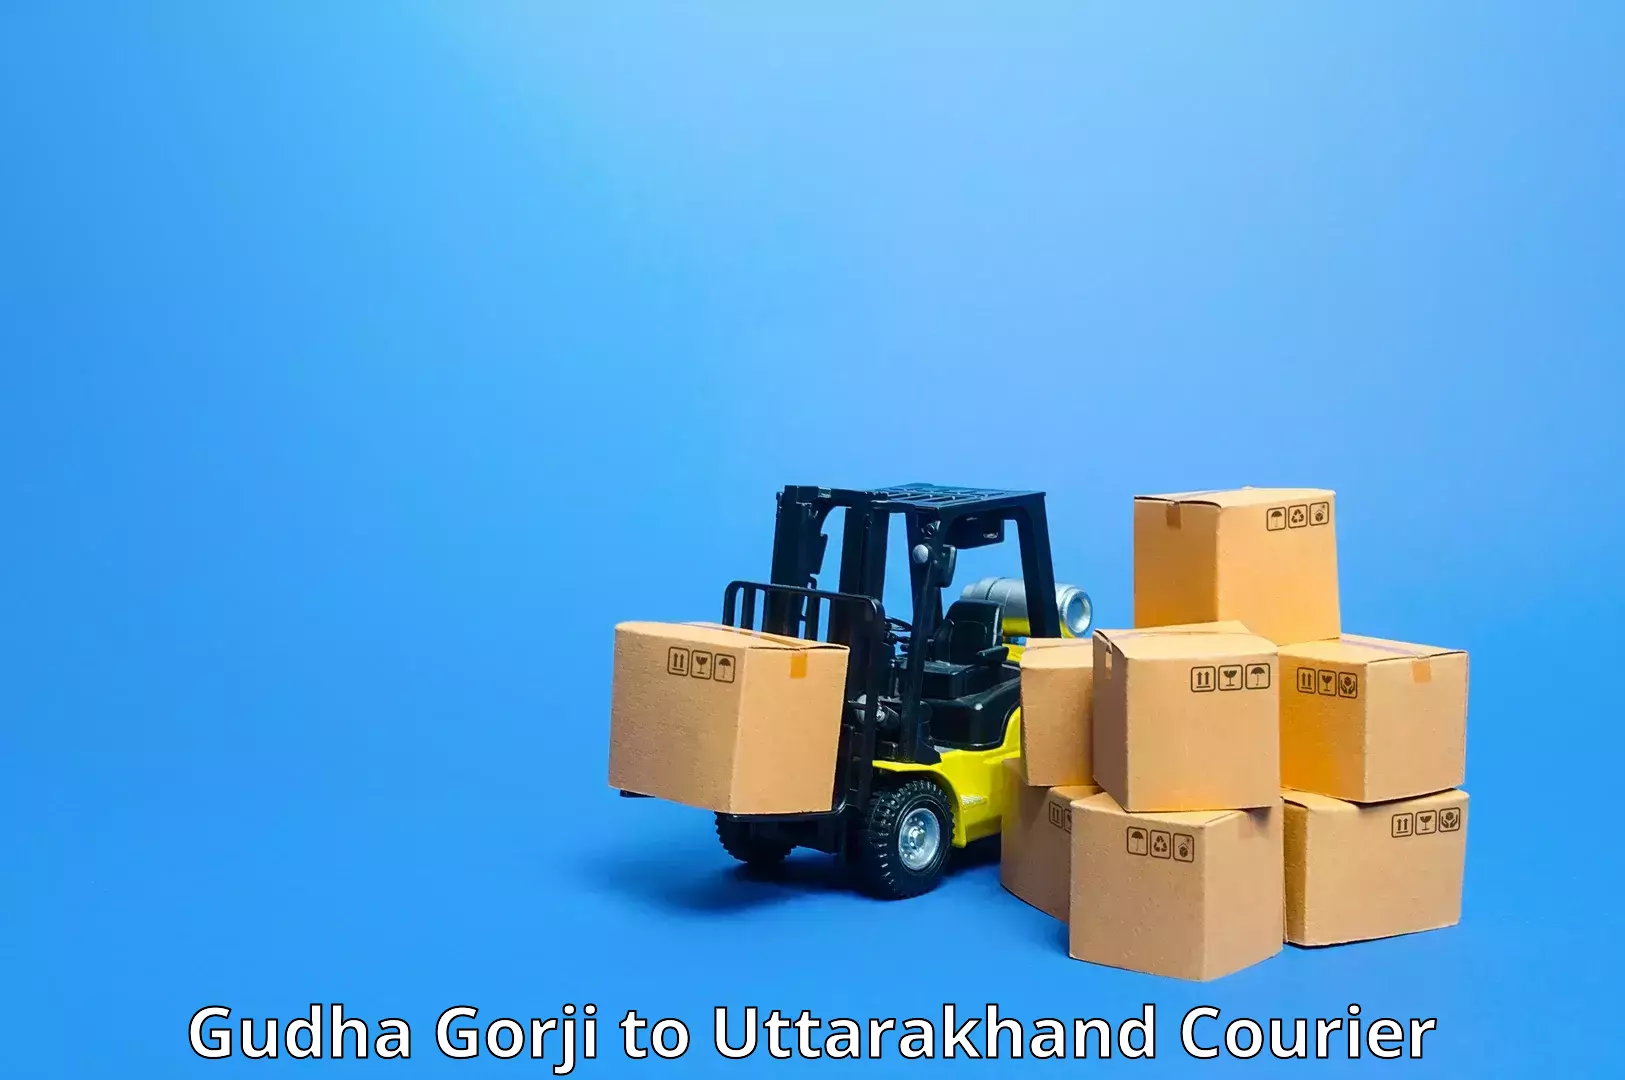 Bulk courier orders Gudha Gorji to Uttarakhand